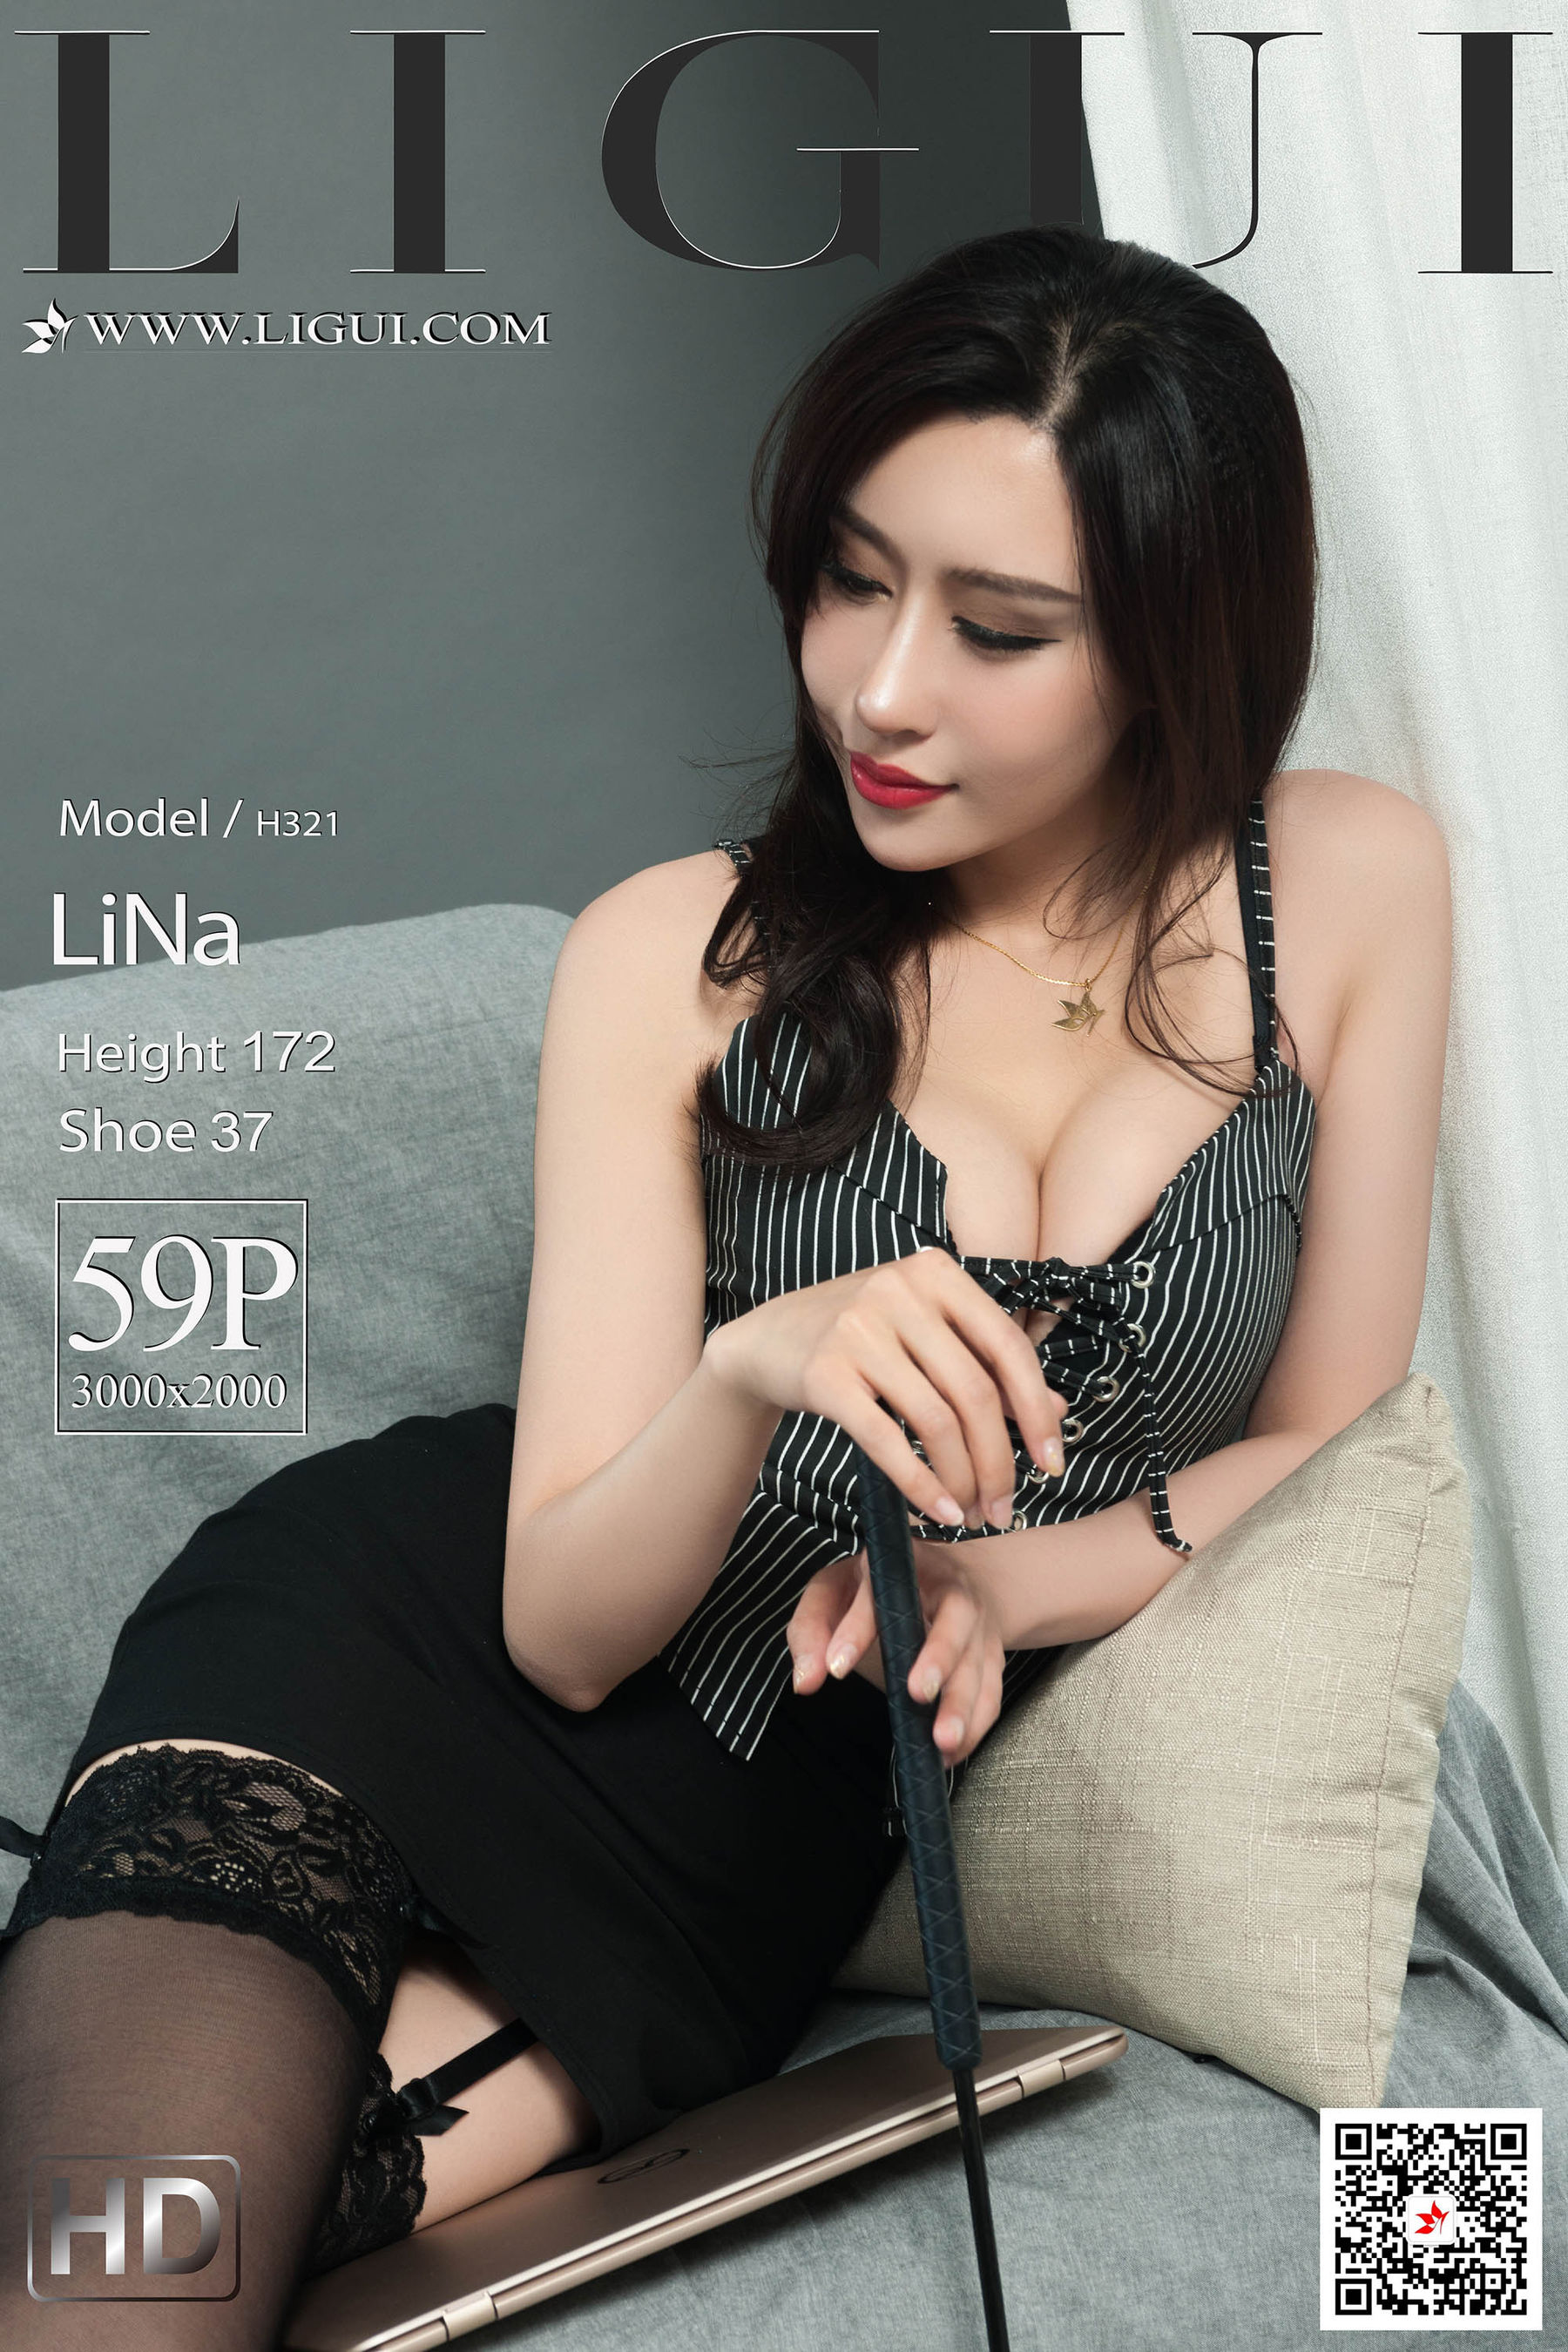 [丽柜Ligui] 网络丽人 Model LiNa  第1张